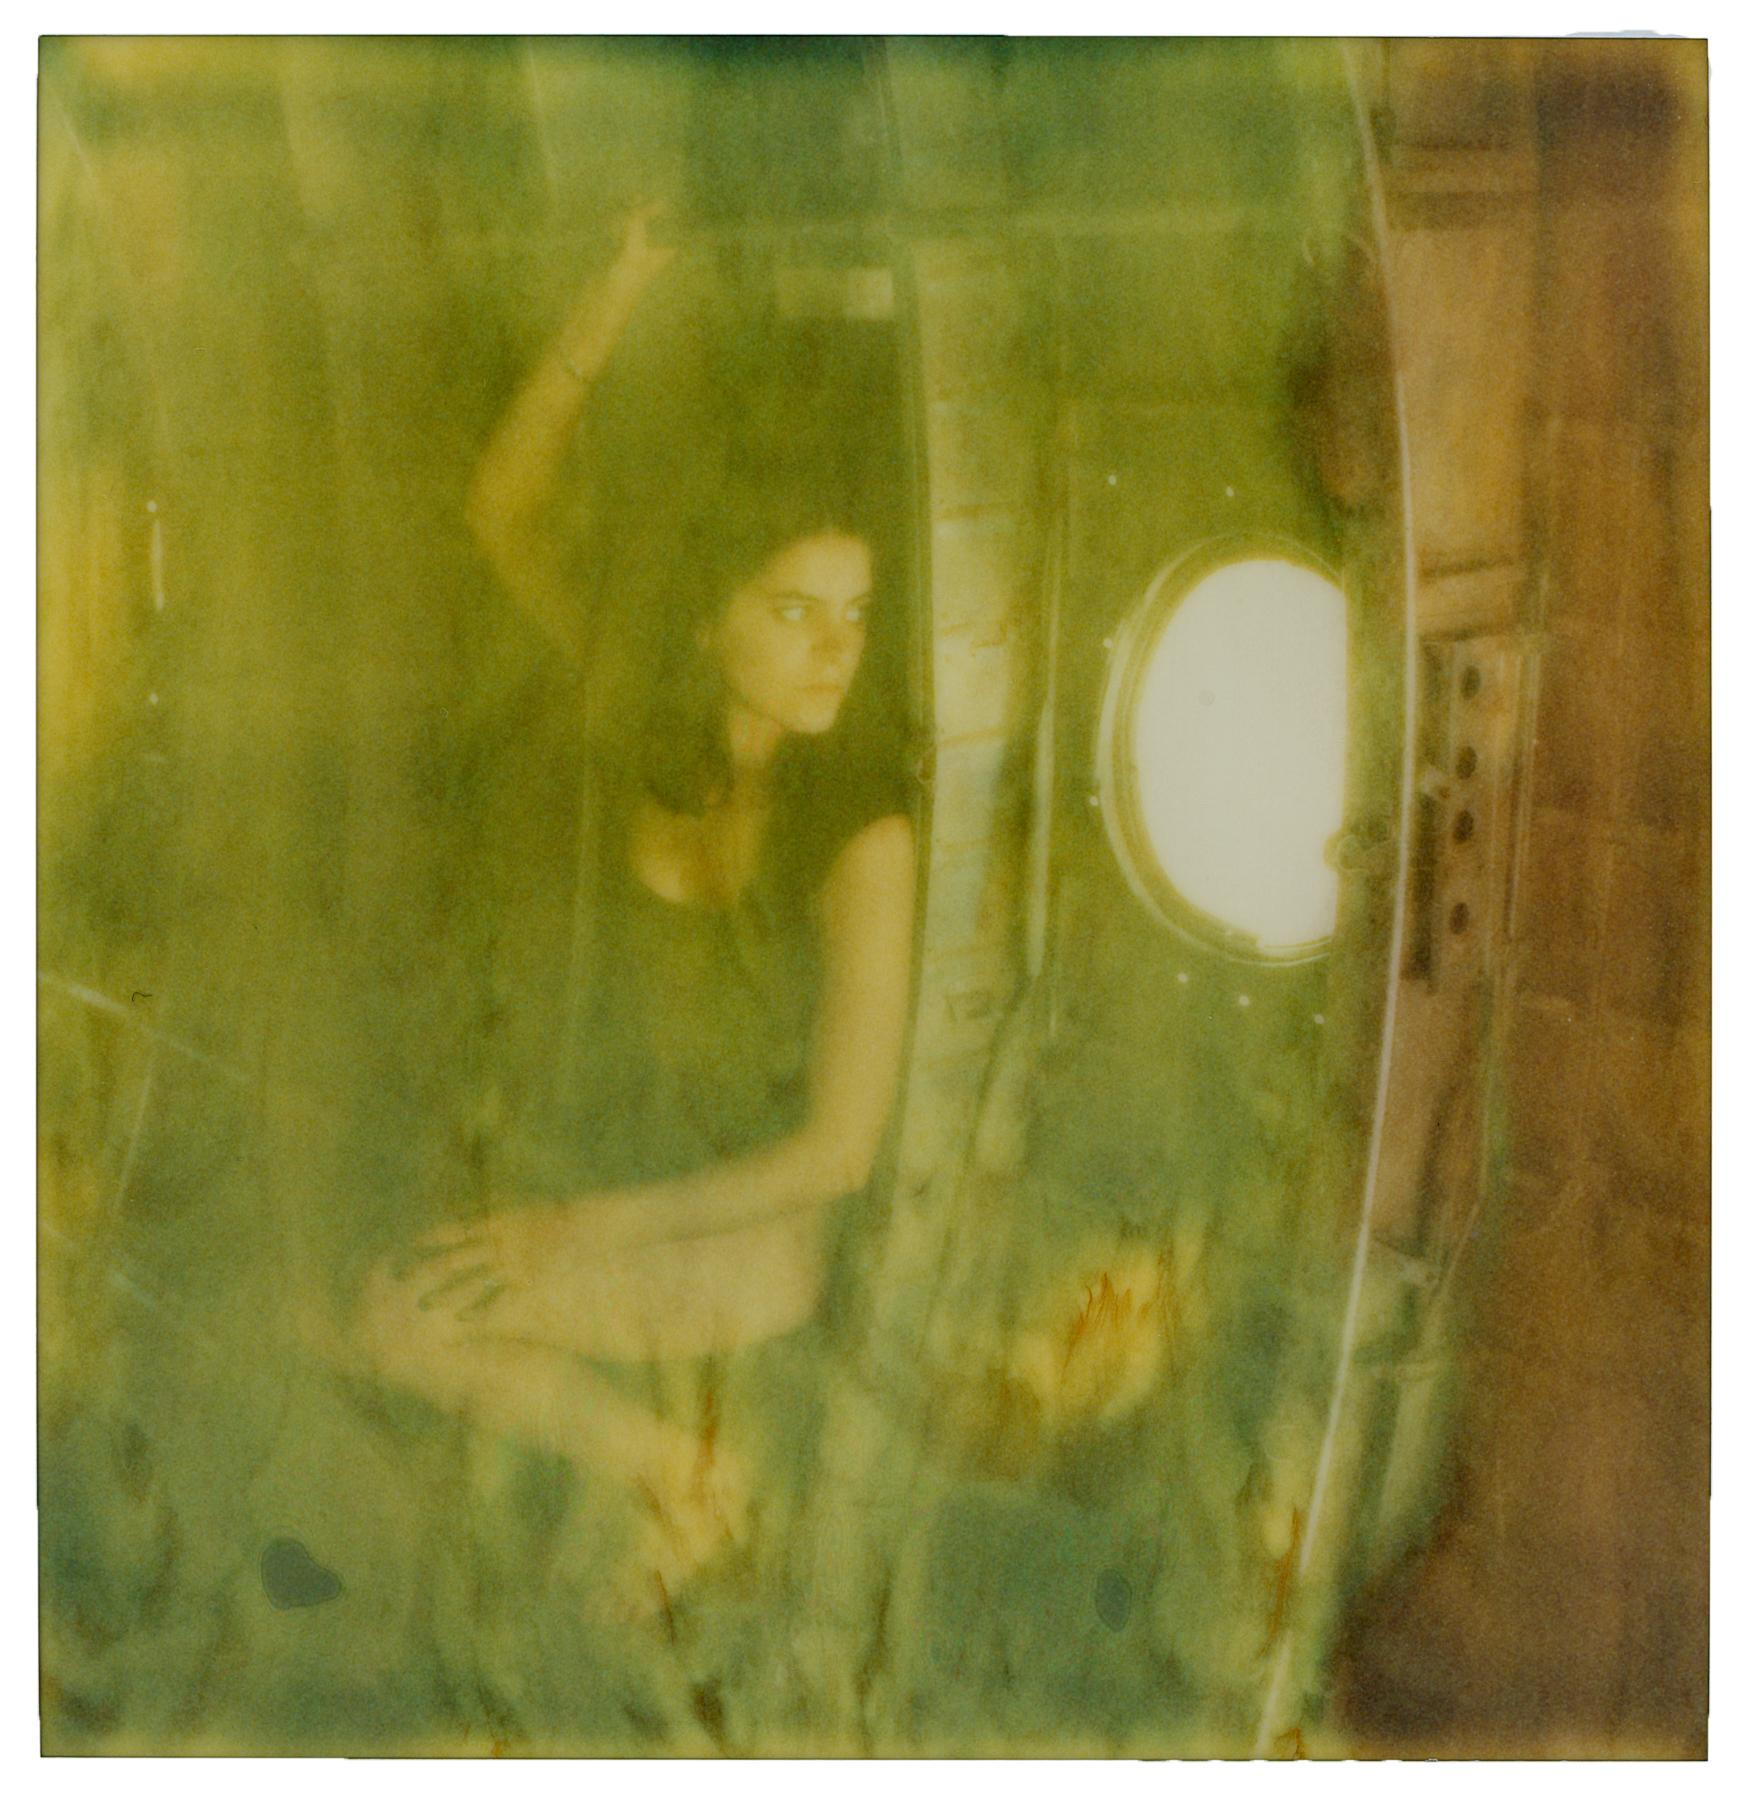 Portrait Photograph Ariel Shelleg - Supprimer avant vol - 21e siècle, contemporain, Polaroid